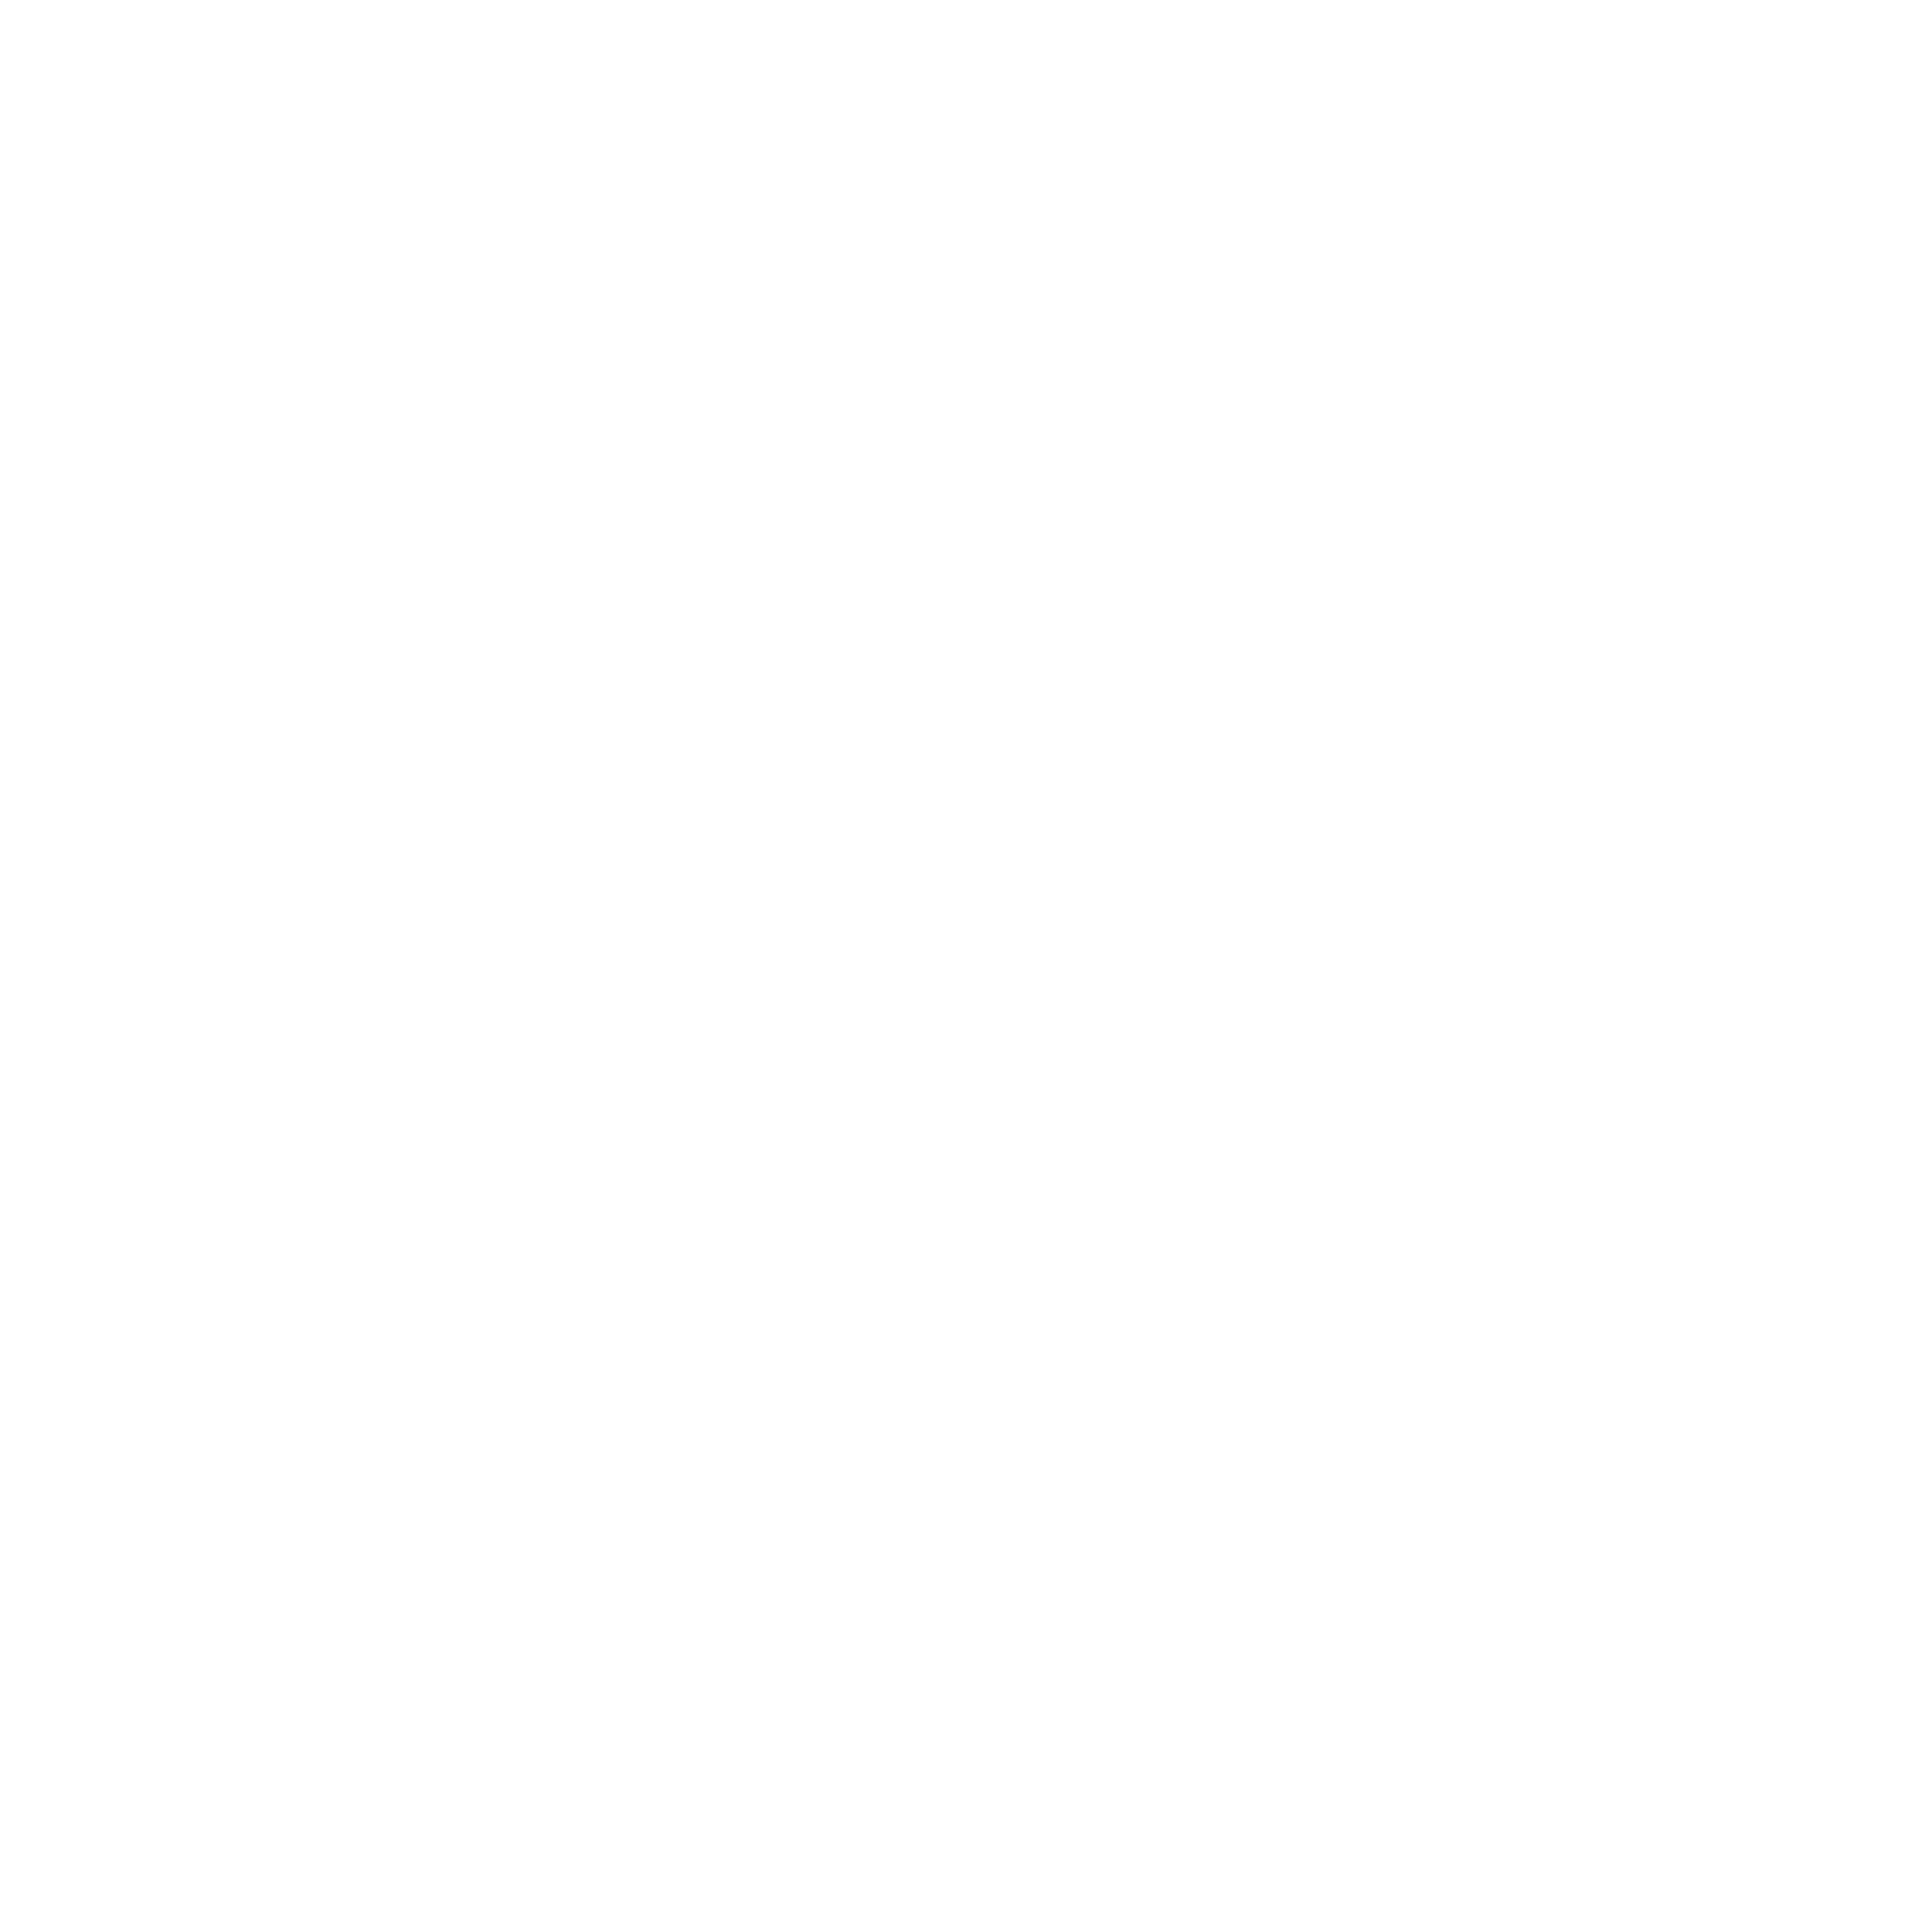 Home Cup Of Joe Coffee Co